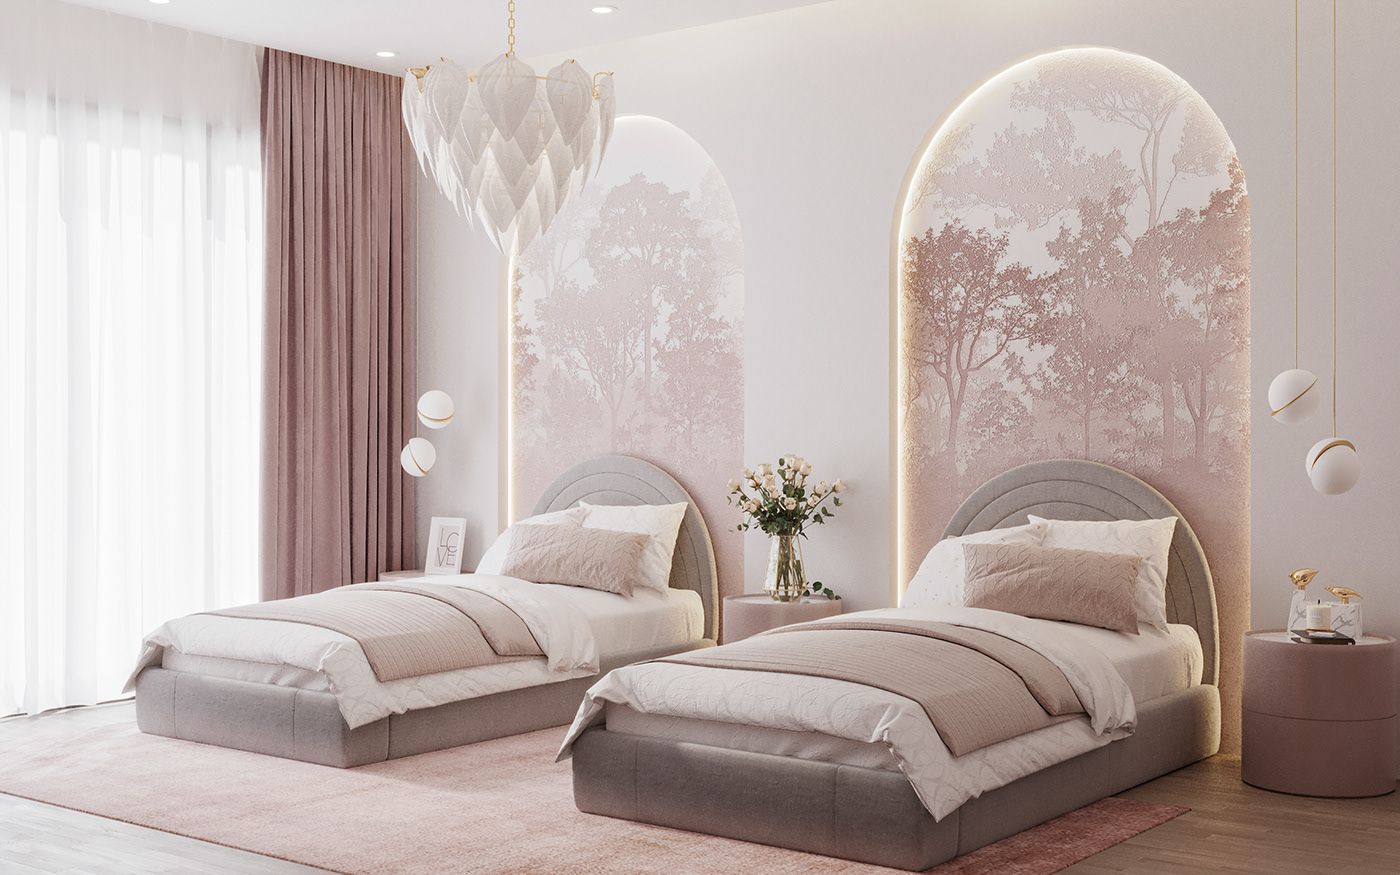 Thiết kế phòng ngủ màu hồng phối màu trắng với giường đôi